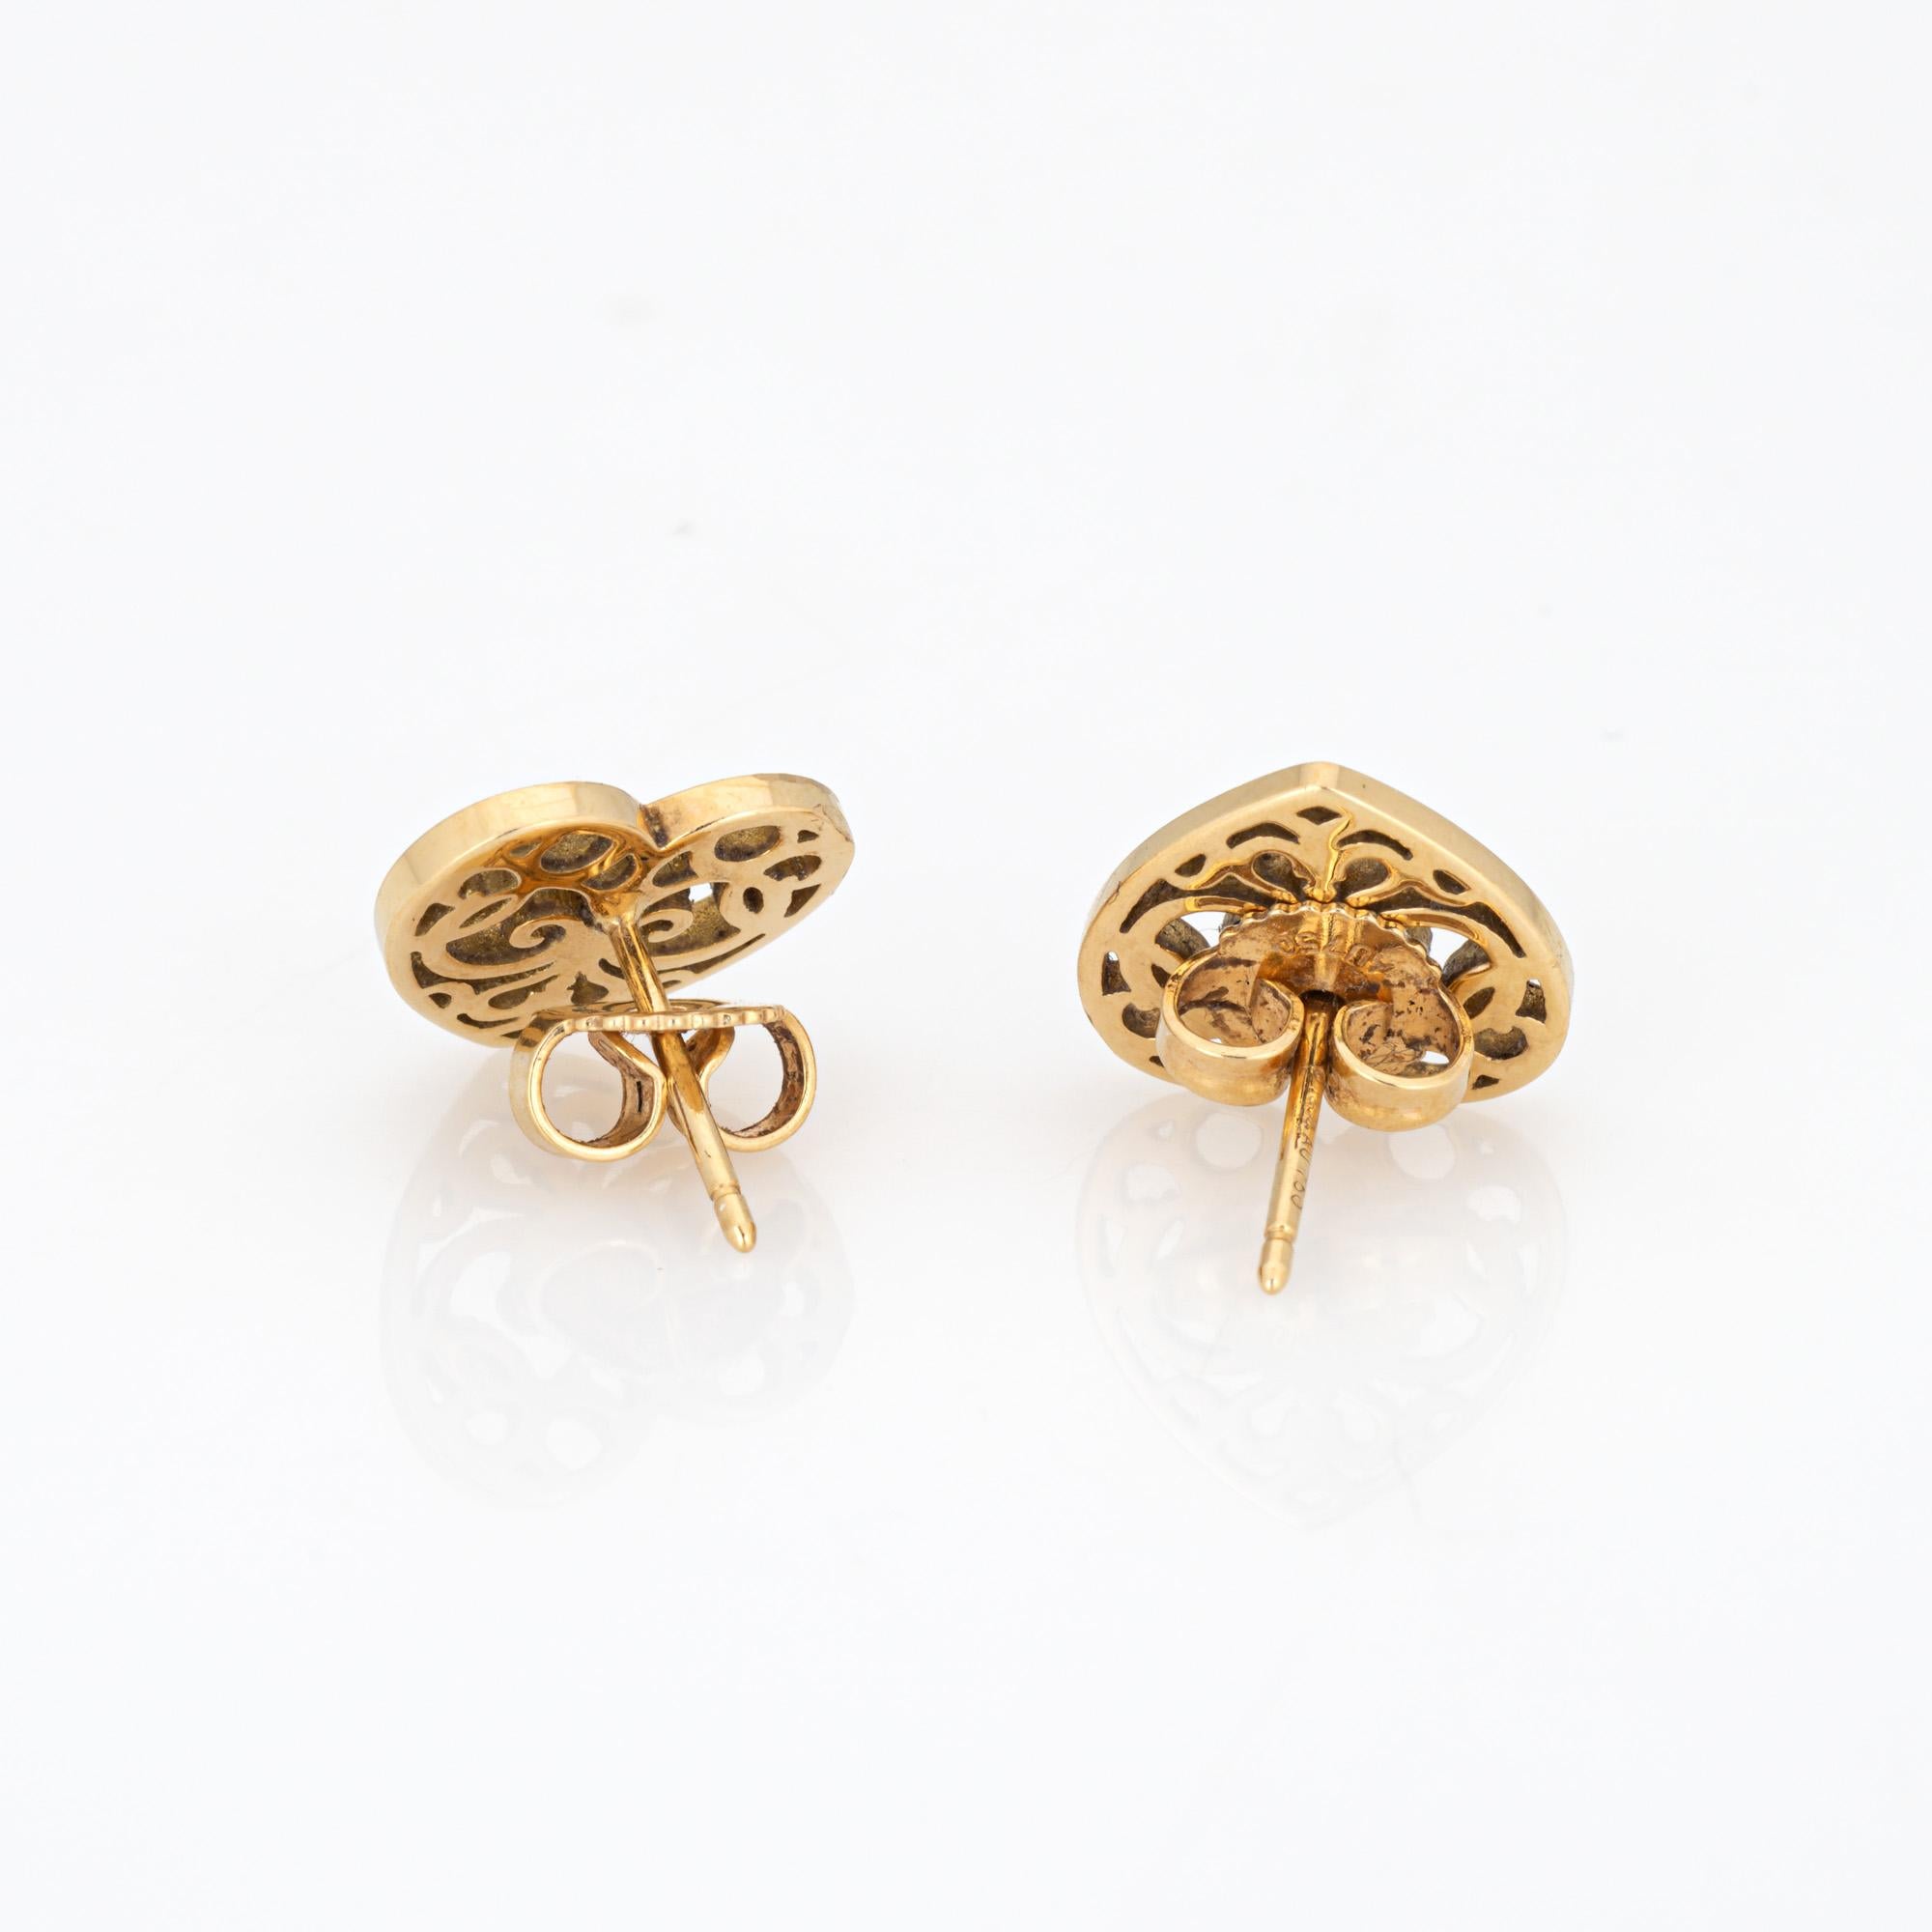 Paire de boucles d'oreilles 'Enchant' de Tiffany & CIRCA en or jaune 18 carats (circa 1993).

Issues de la collection 'Enchant' de Tiffany & Co lancée en 2012, ces boucles d'oreilles ont été inspirées par les portails en fer à volutes des domaines